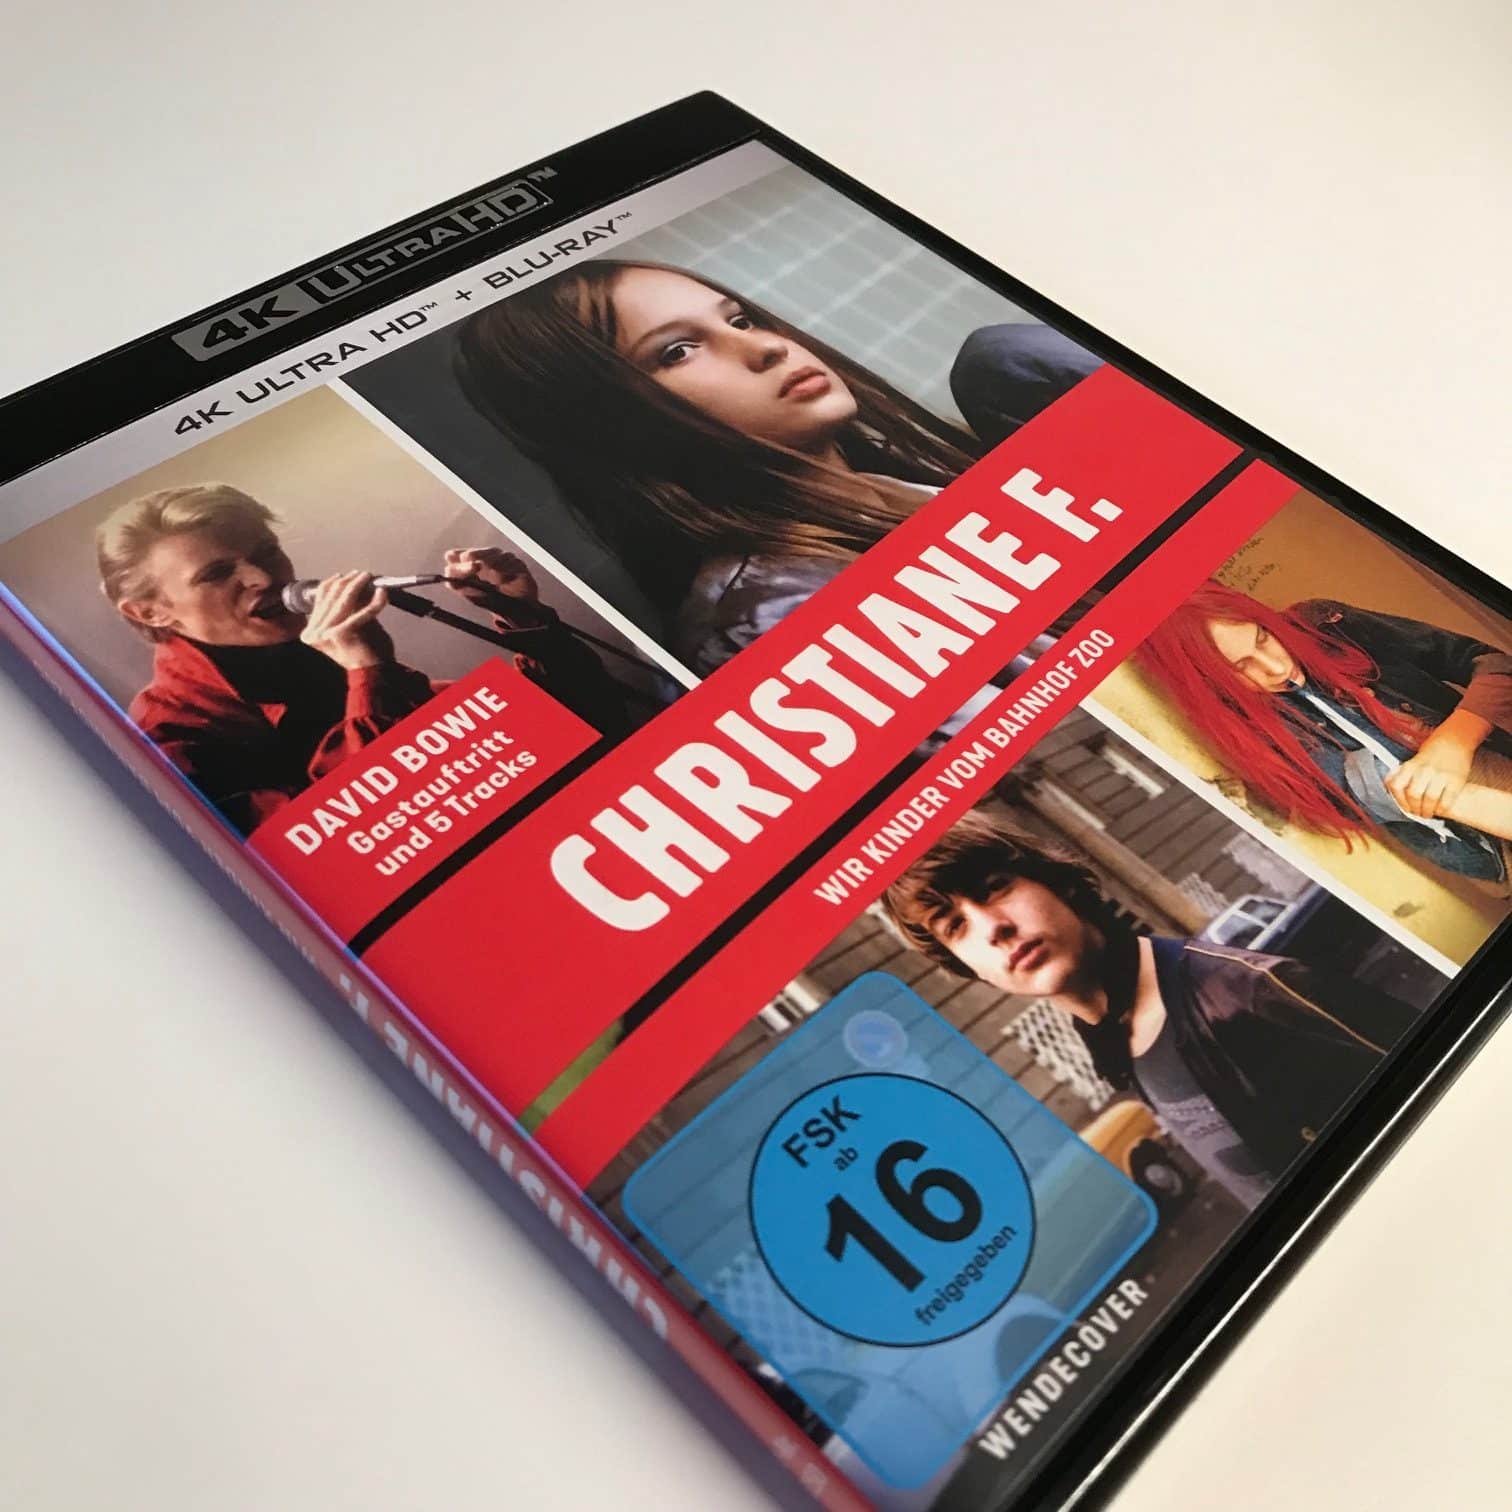 [Review] Christiane F. – Wir Kinder vom Bahnhof Zoo (1981) von Uli Edel (im 4k-UHD- und Blu-ray-Keep-Case)